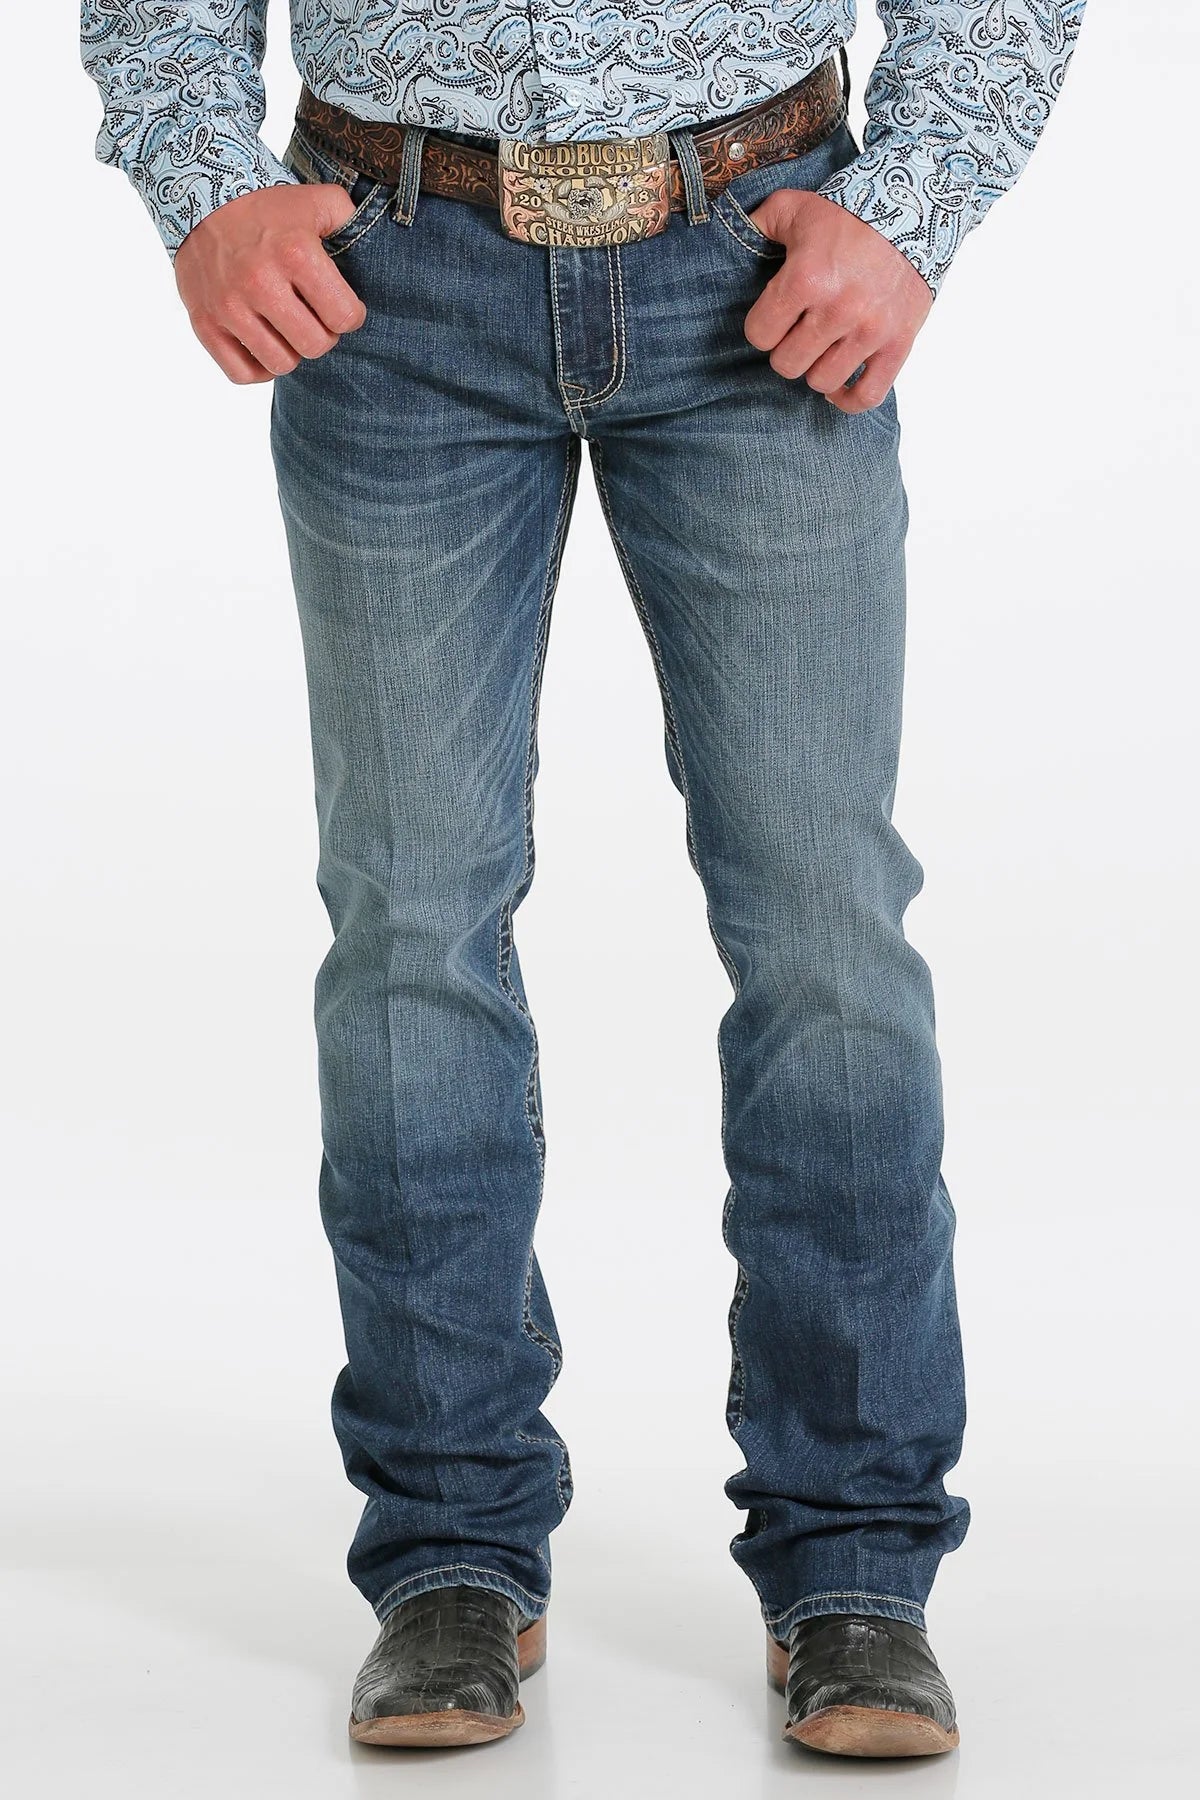 Cinch Men's Slim Fit Boot Cut Jeans